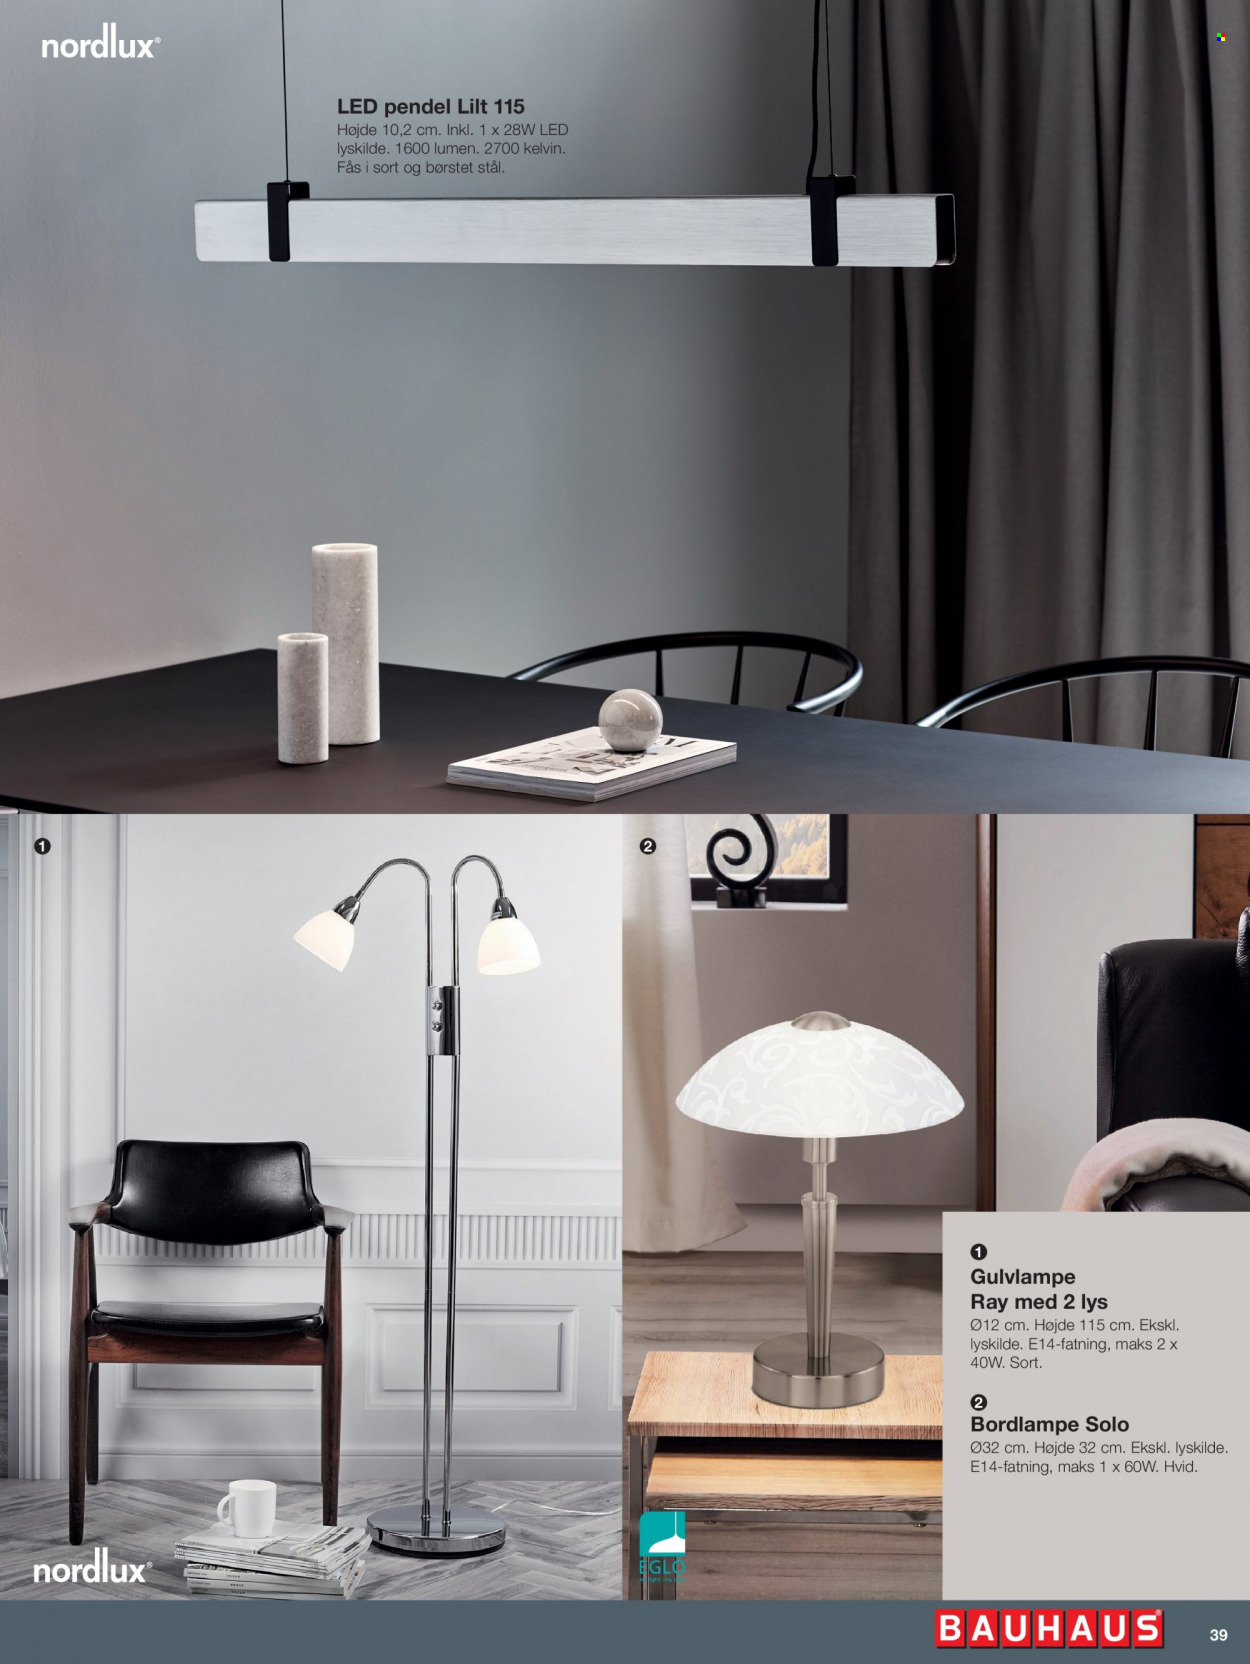 Bauhaus tilbud  - tilbudsprodukter - pendel, bordlampe, gulvlampe, Nordlux. Side 39.